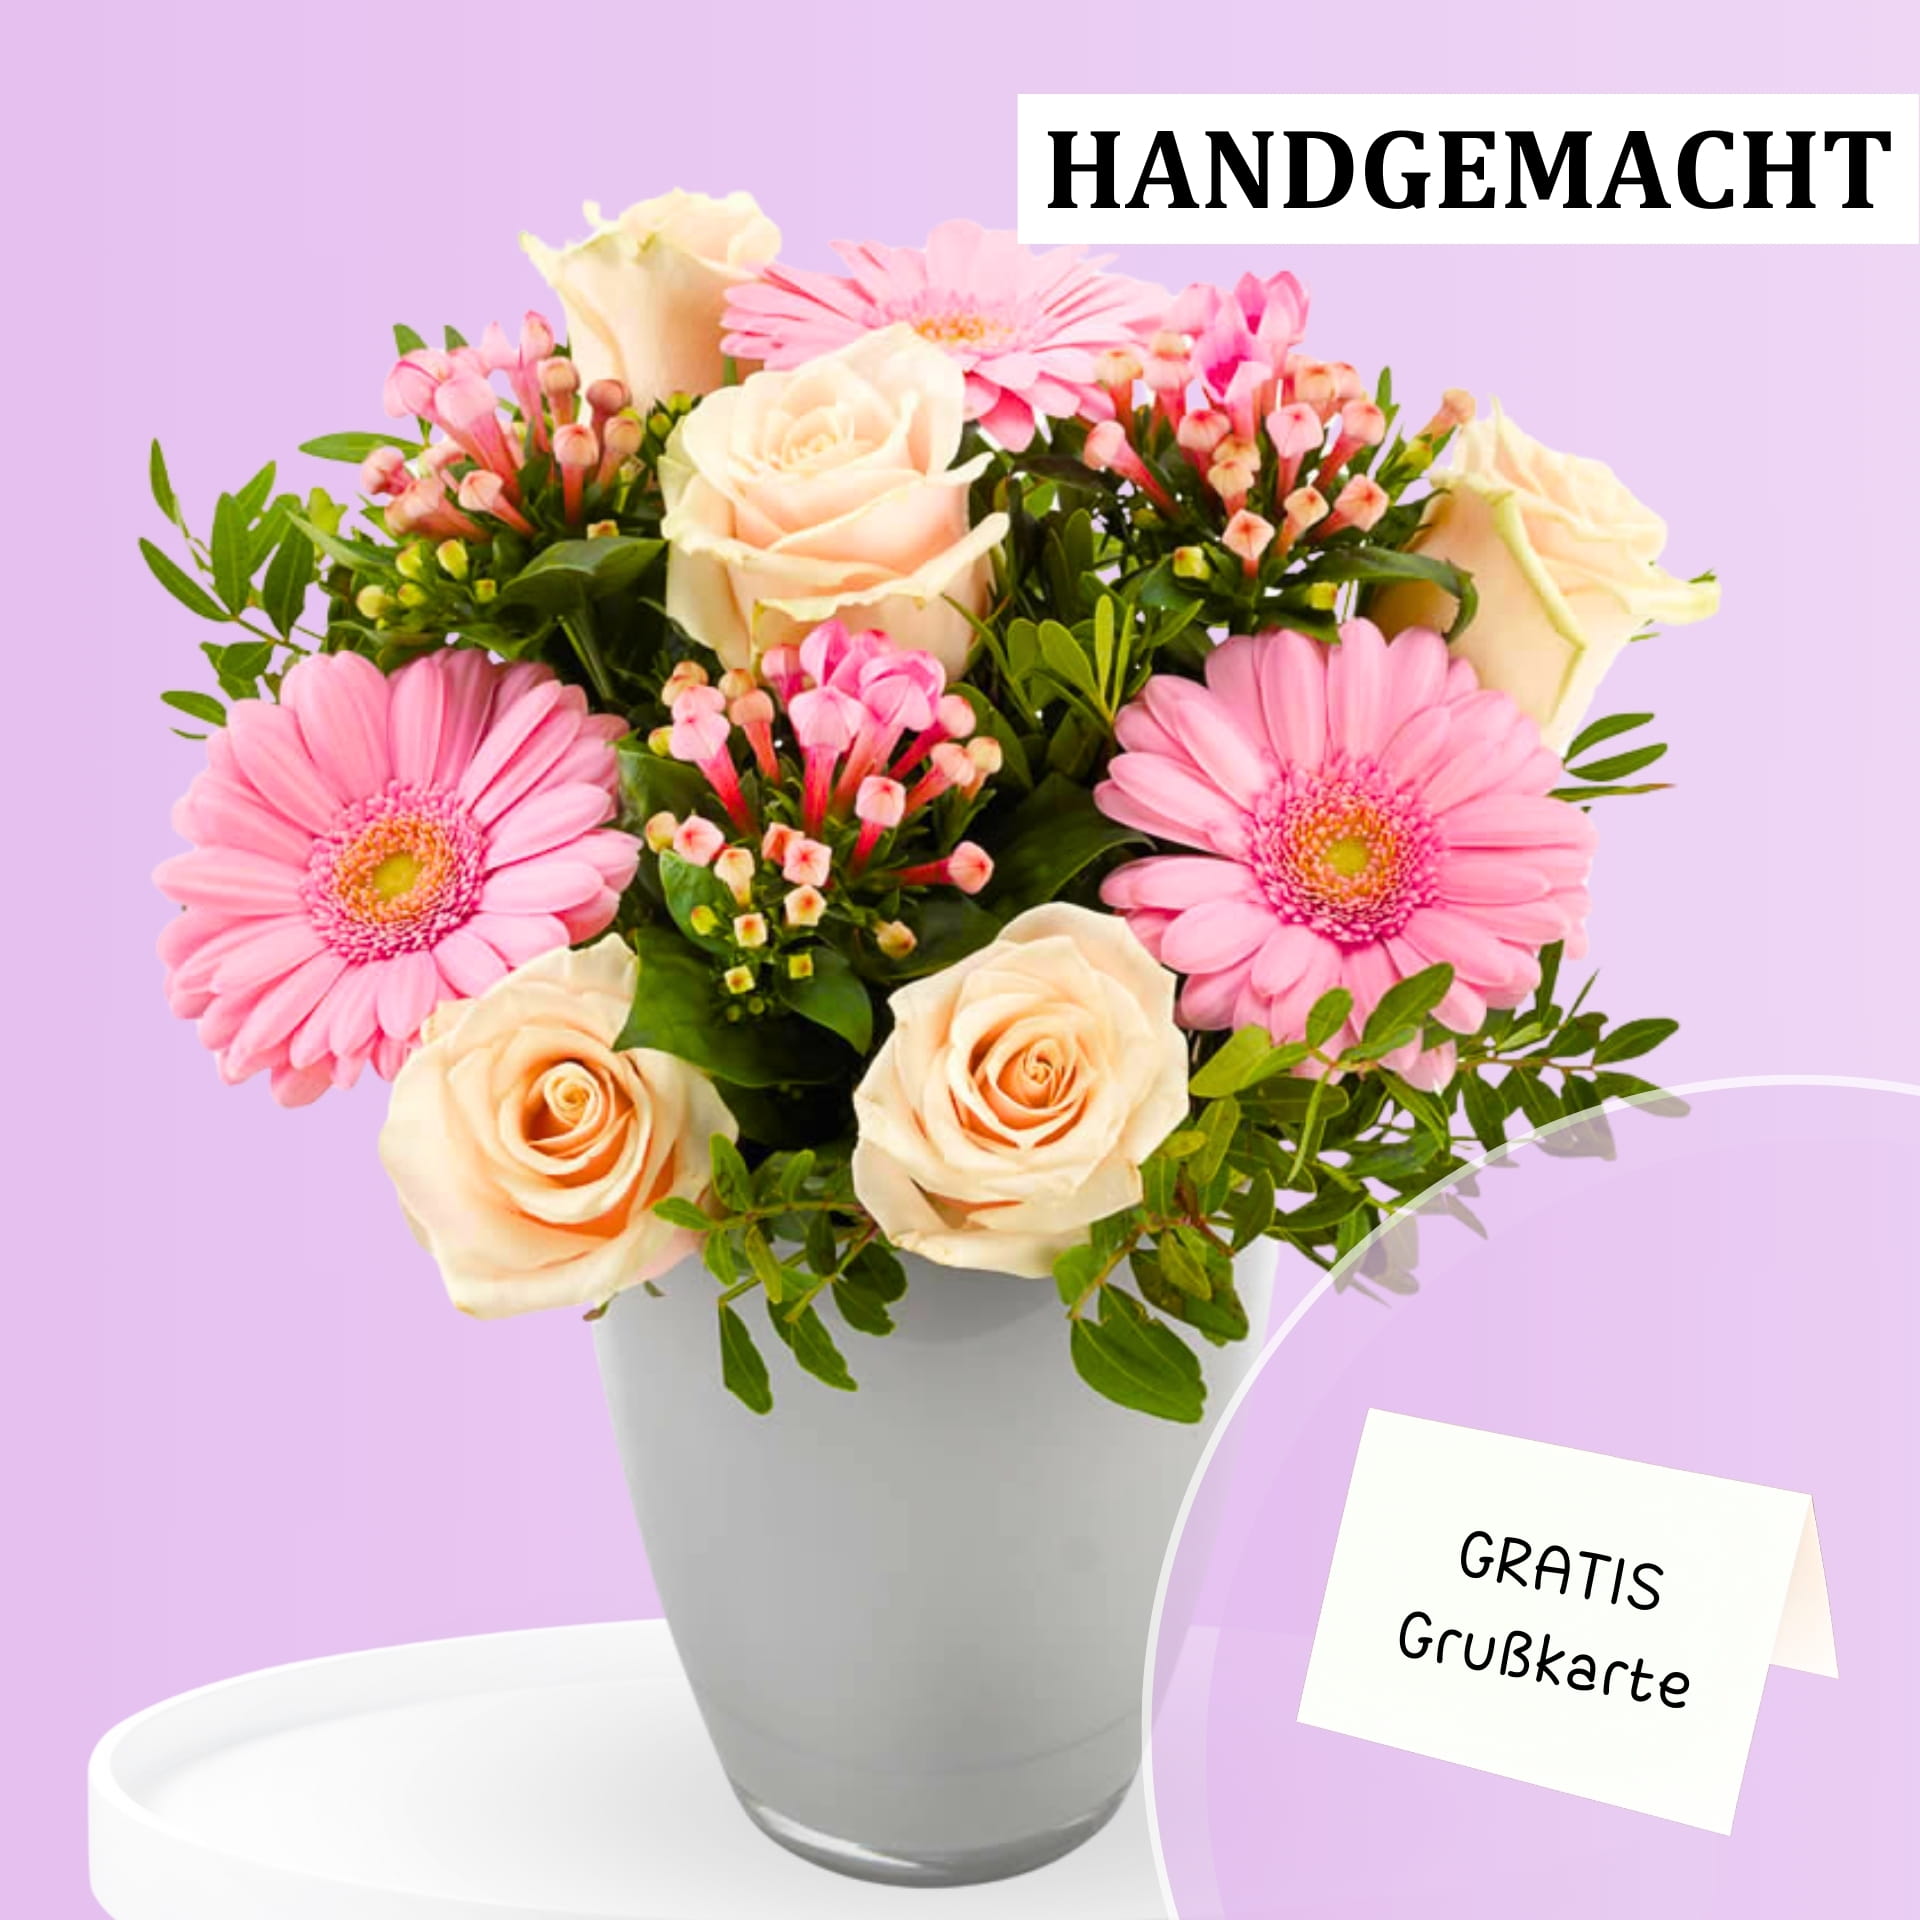 Wunderschönes Blumengesteck aus rosa Gerbera und cremefarbenen Rosen, das per Post verschickt wird. Inklusive gratis Grußkarte. Bestellen Sie jetzt und bereiten Sie jemandem eine Freude!